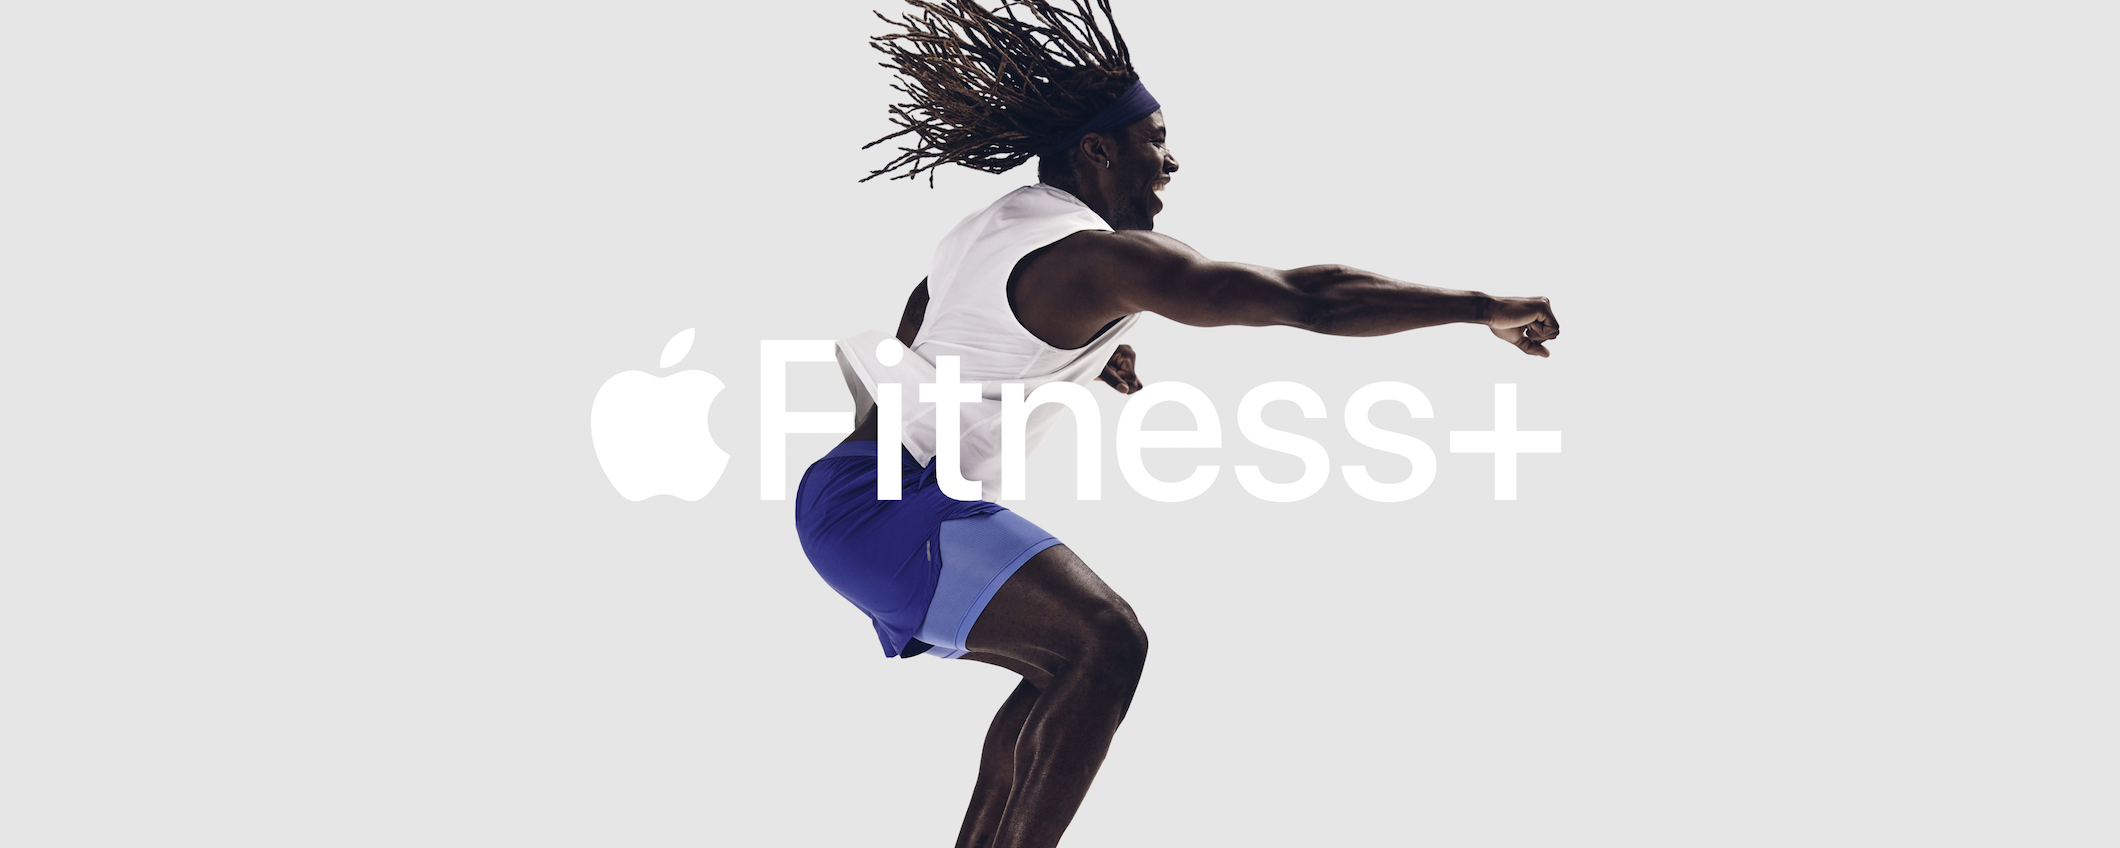 Apple Fitness+: crescita fino a 3,6 miliardi di dollari